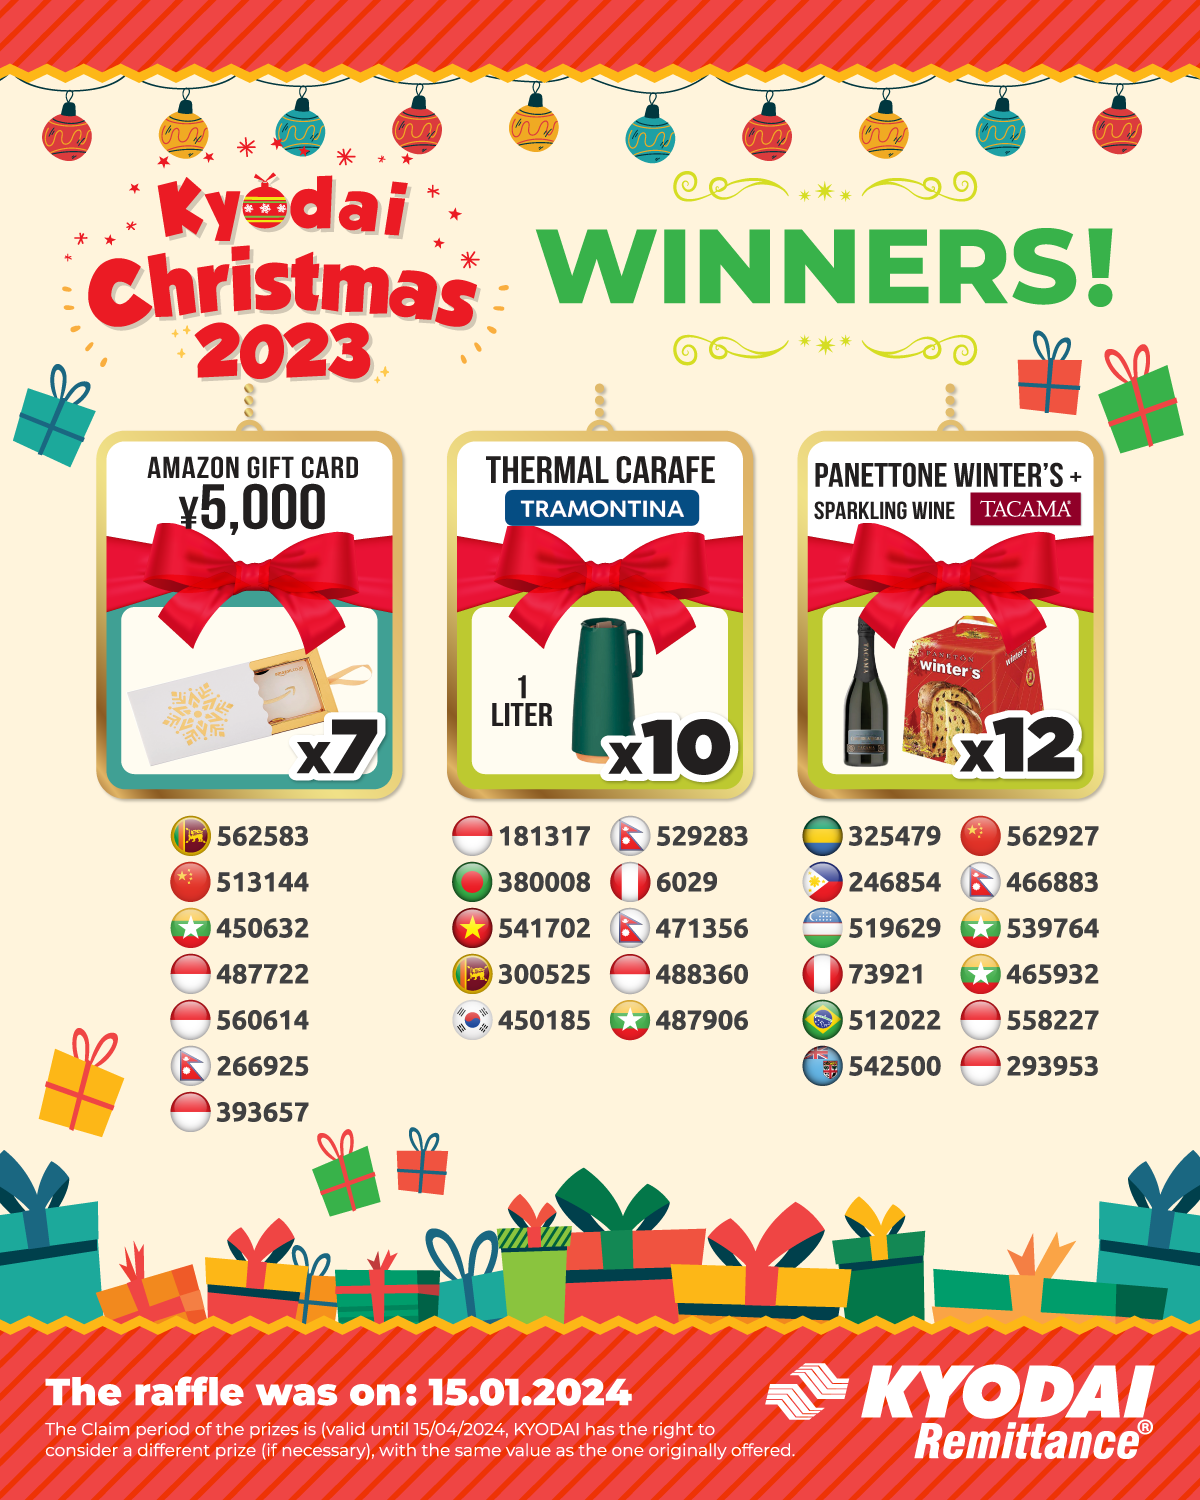 KYODAI CHRISTMAS 2023 - Winners 06